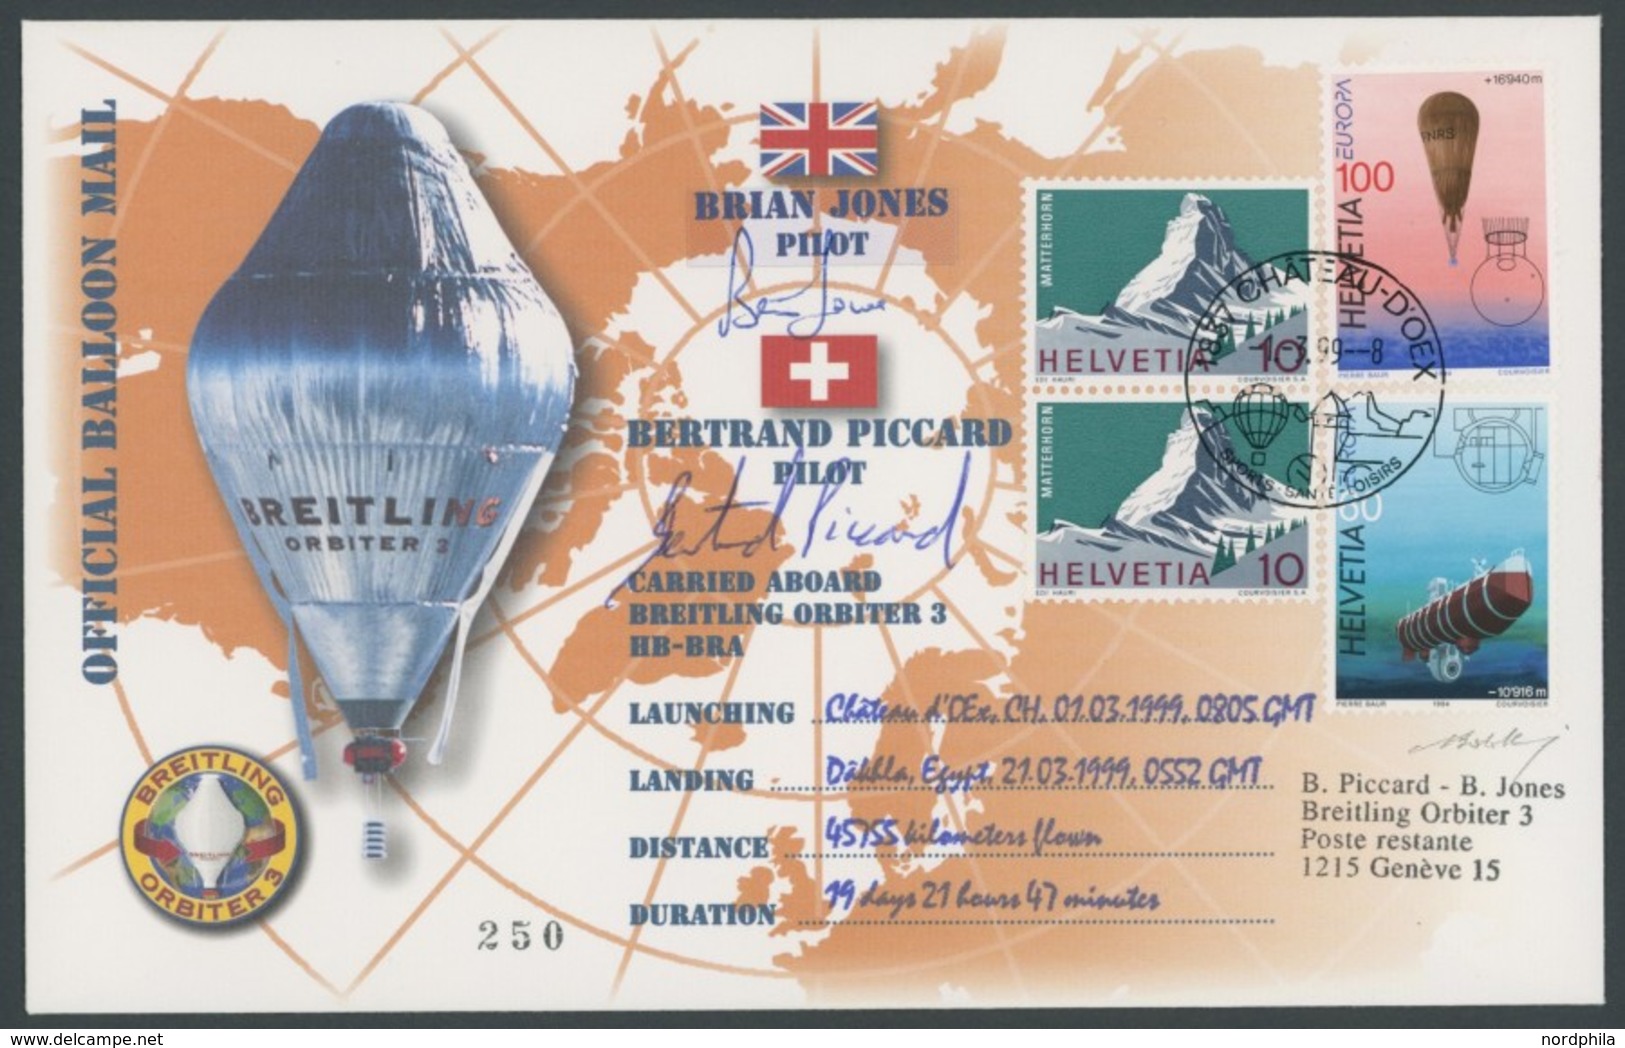 LUFTPOST 1999, Orbiter 3 - Weltrund Ballon Rekordflug, 45755 Km In 19 Tagen, Offizielle Ballon Mail Mit Unterschriften D - Erst- U. Sonderflugbriefe